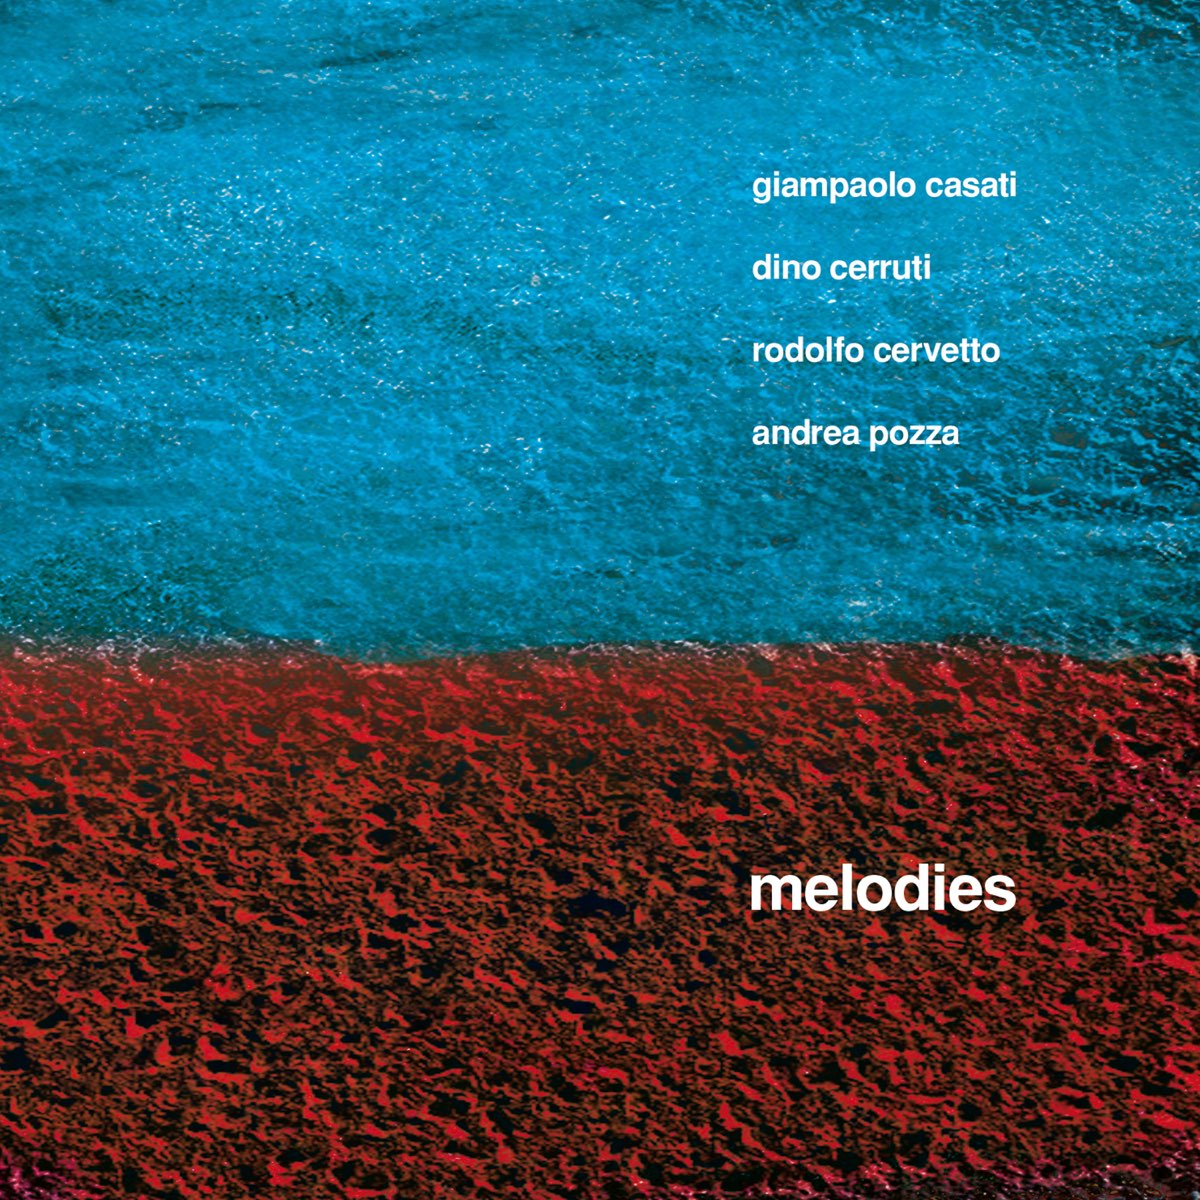 ‎Melodies - Album by Giampaolo Casati, Dino Cerruti, Rodolfo Cervetto ...